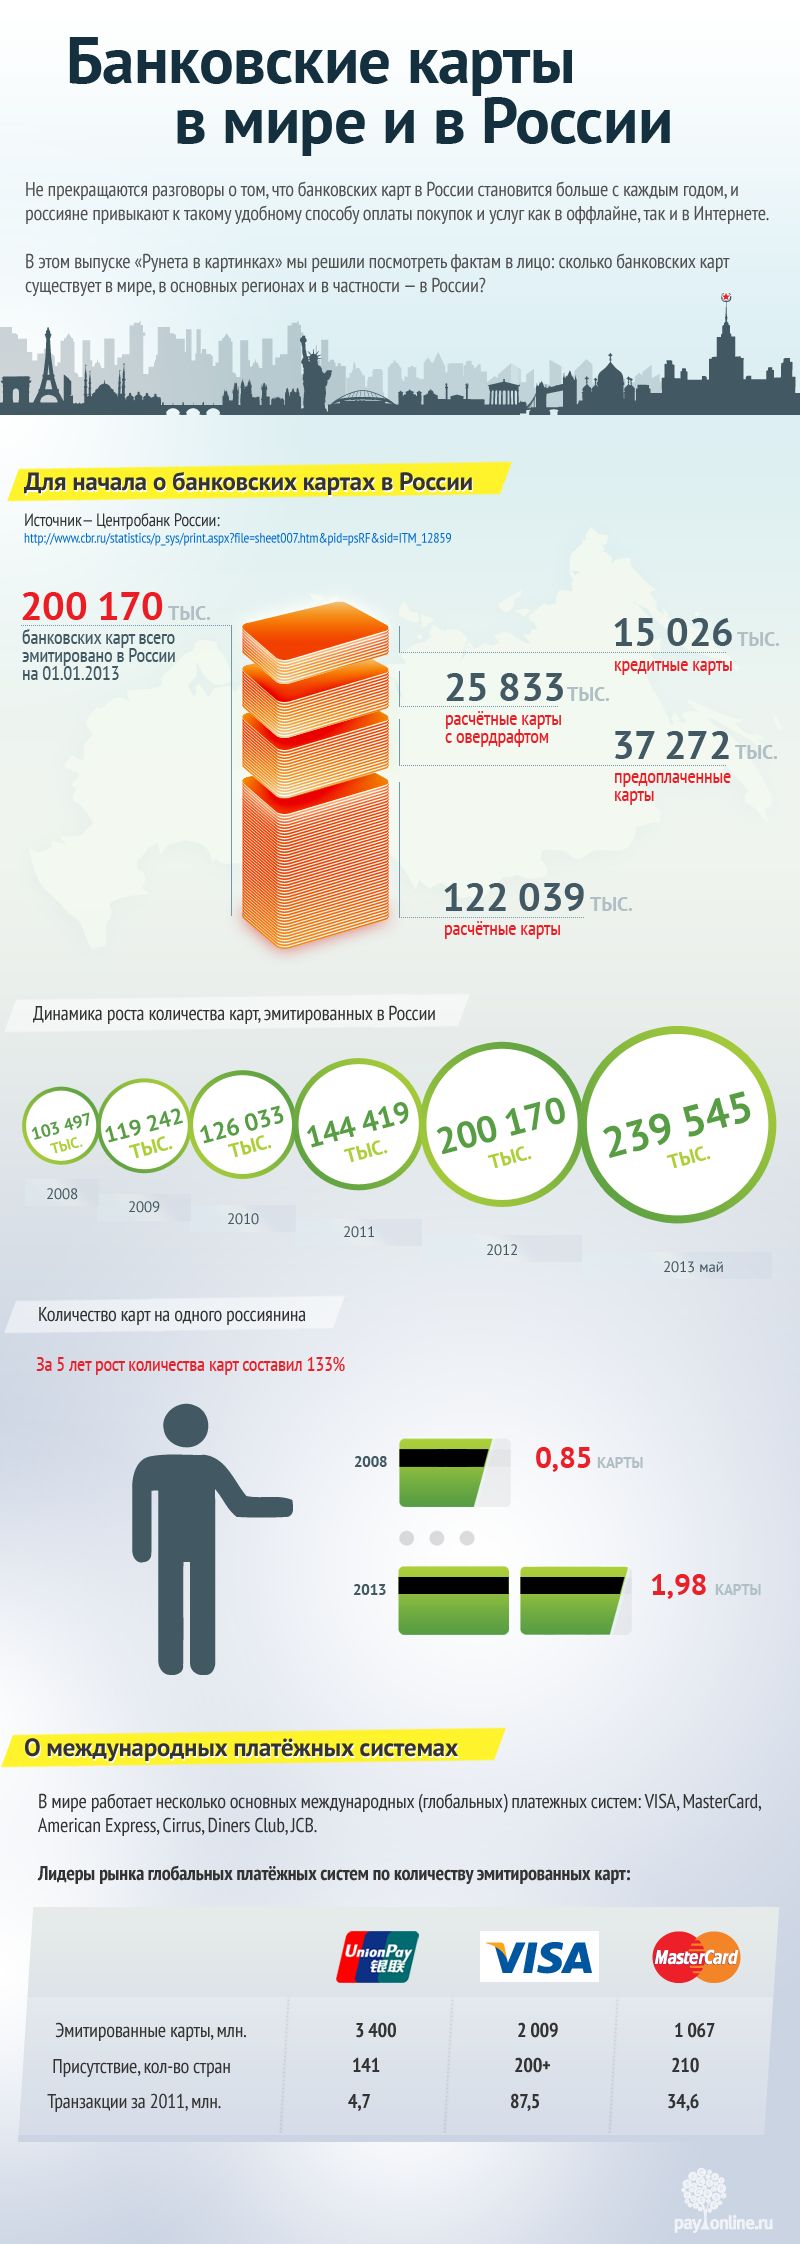 Инфографика развития карточного бизнеса в России